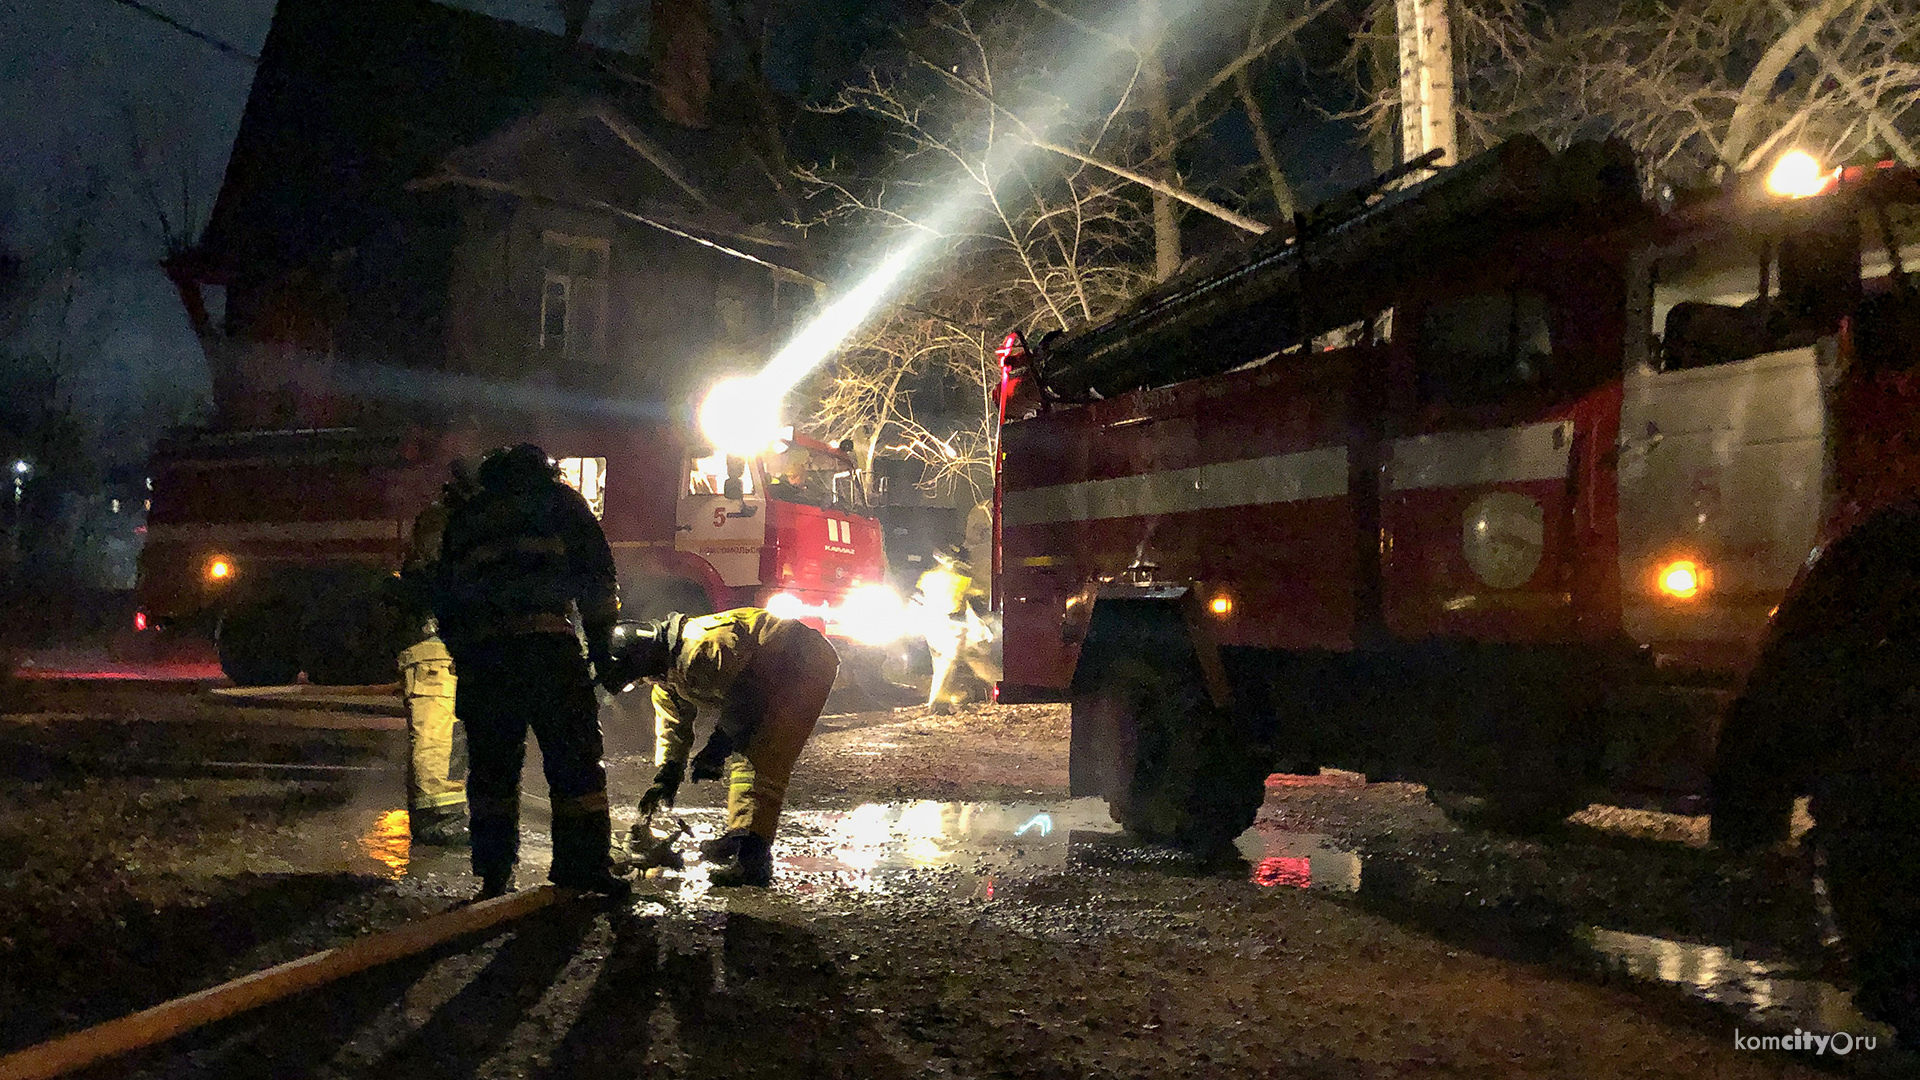 Причиной пожара в деревянном доме на Квартальной улице стал поджог